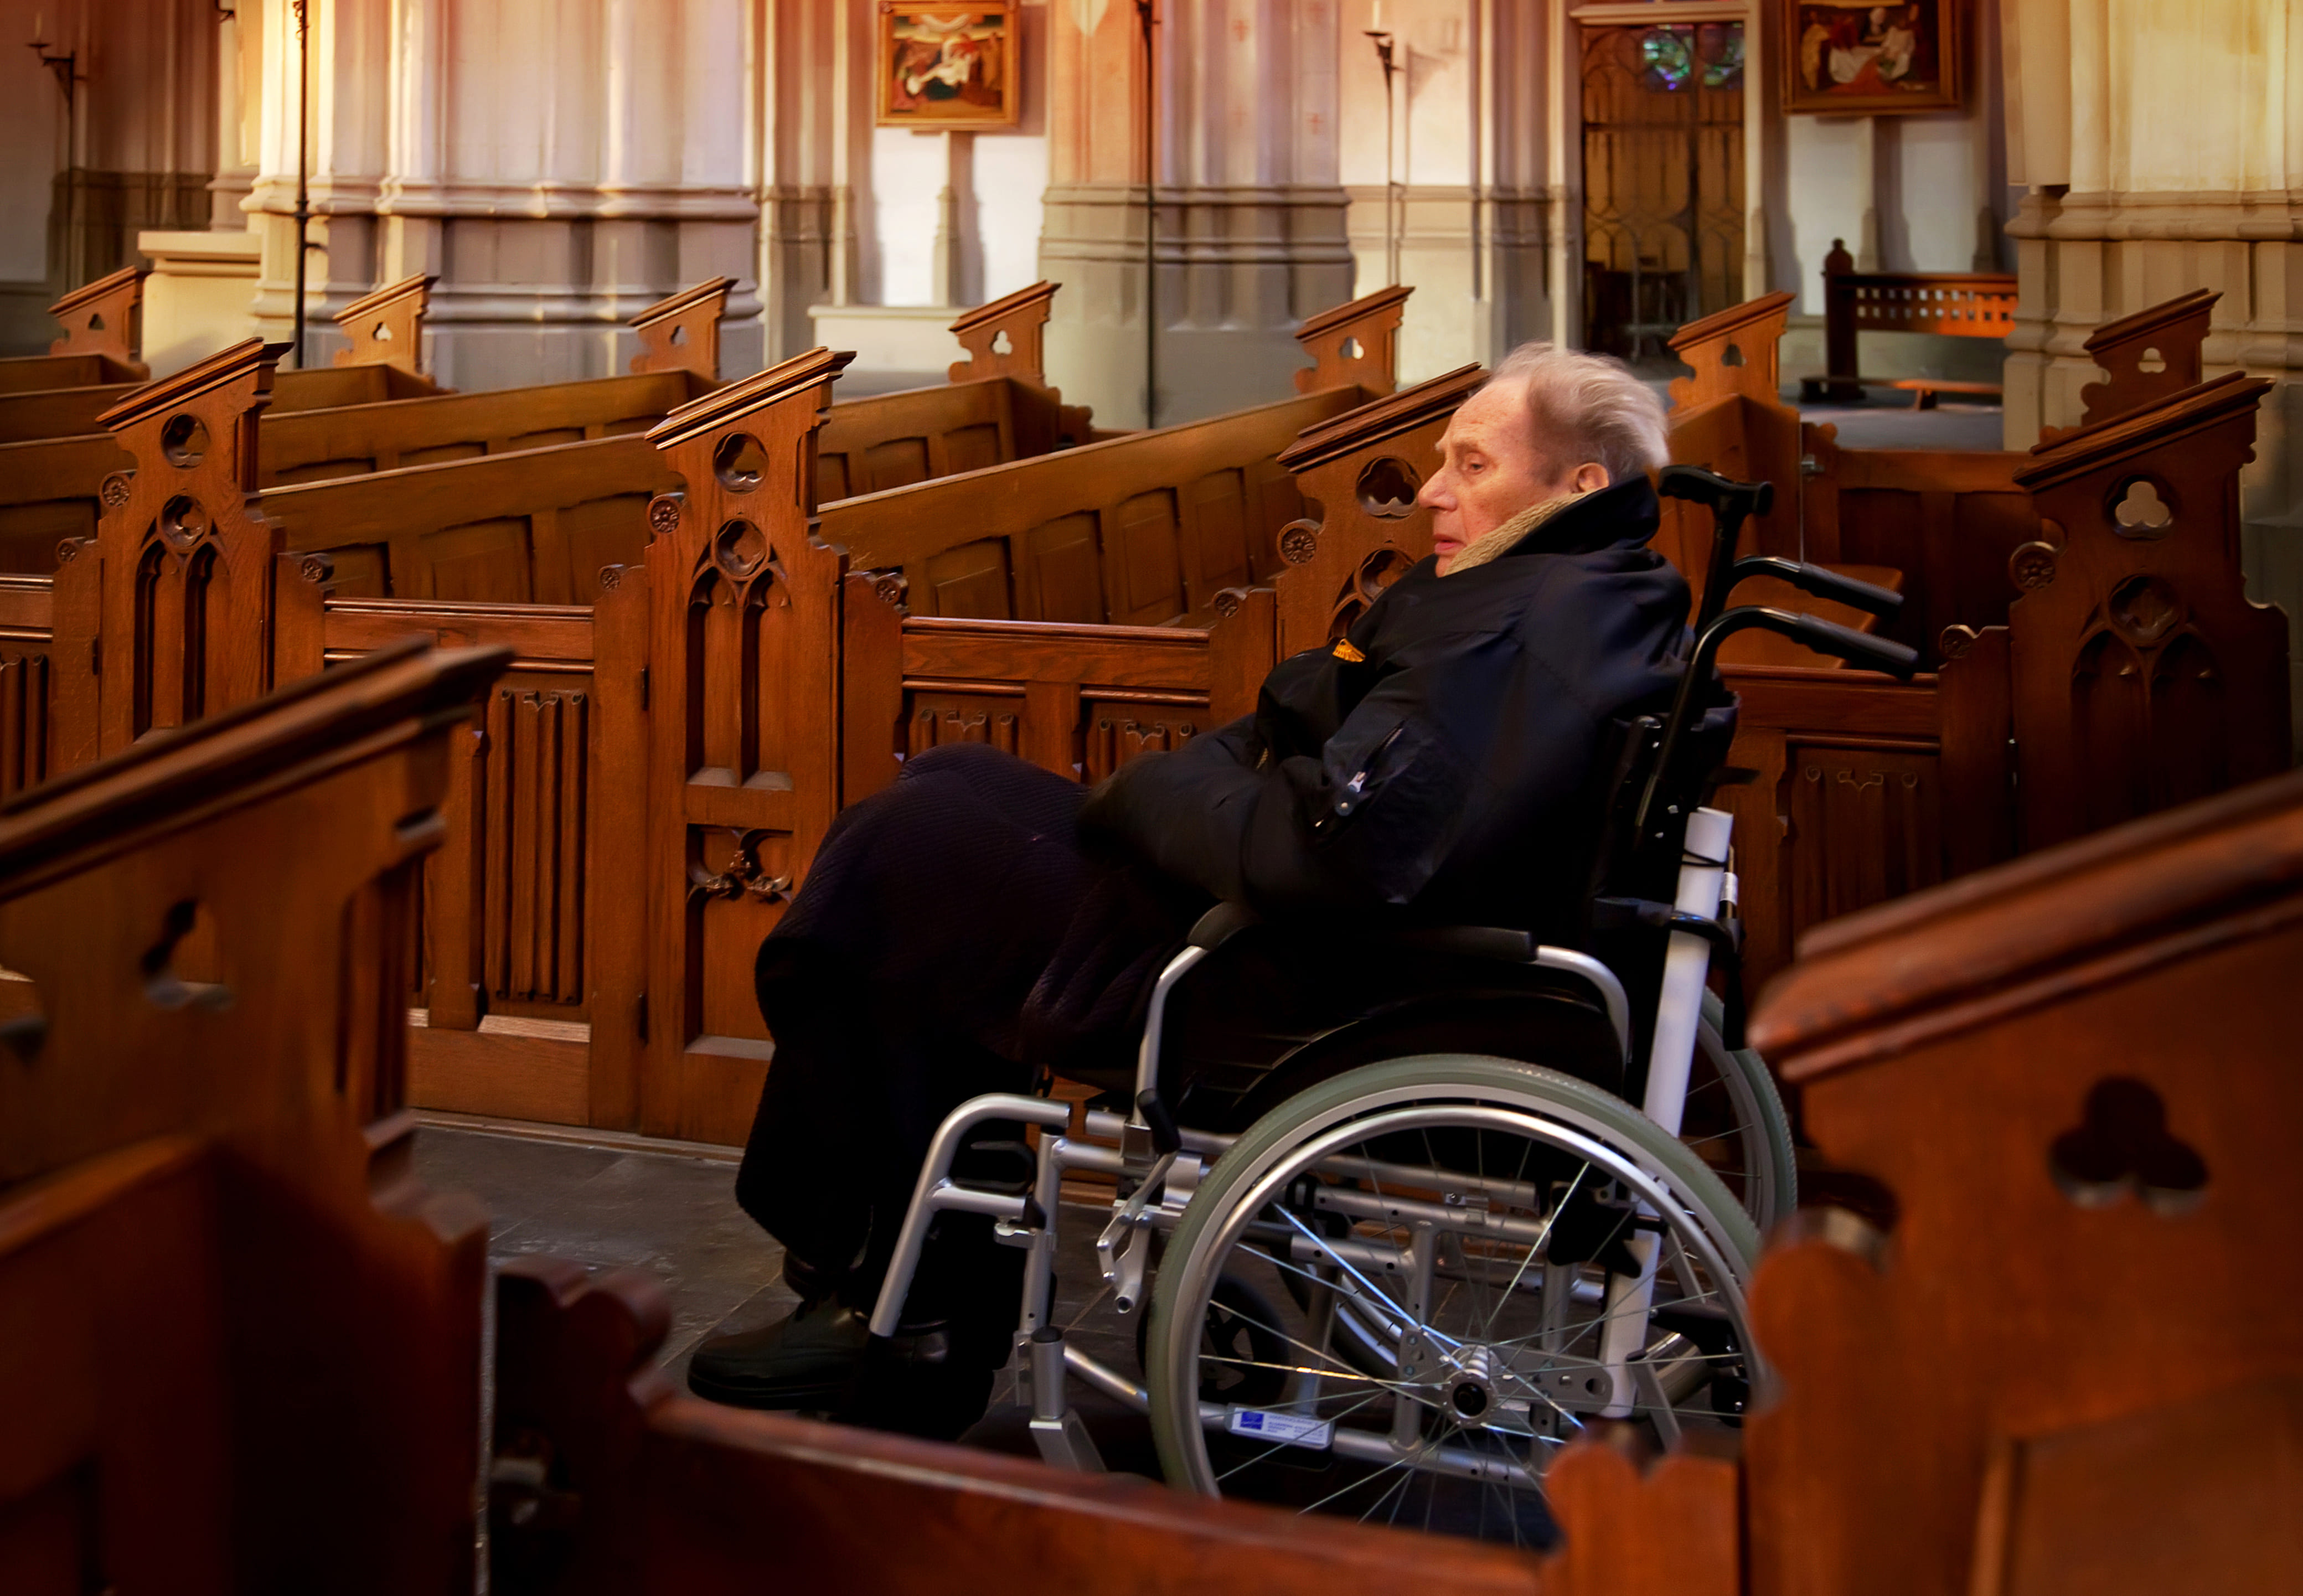 Woman in wheelchair at church.